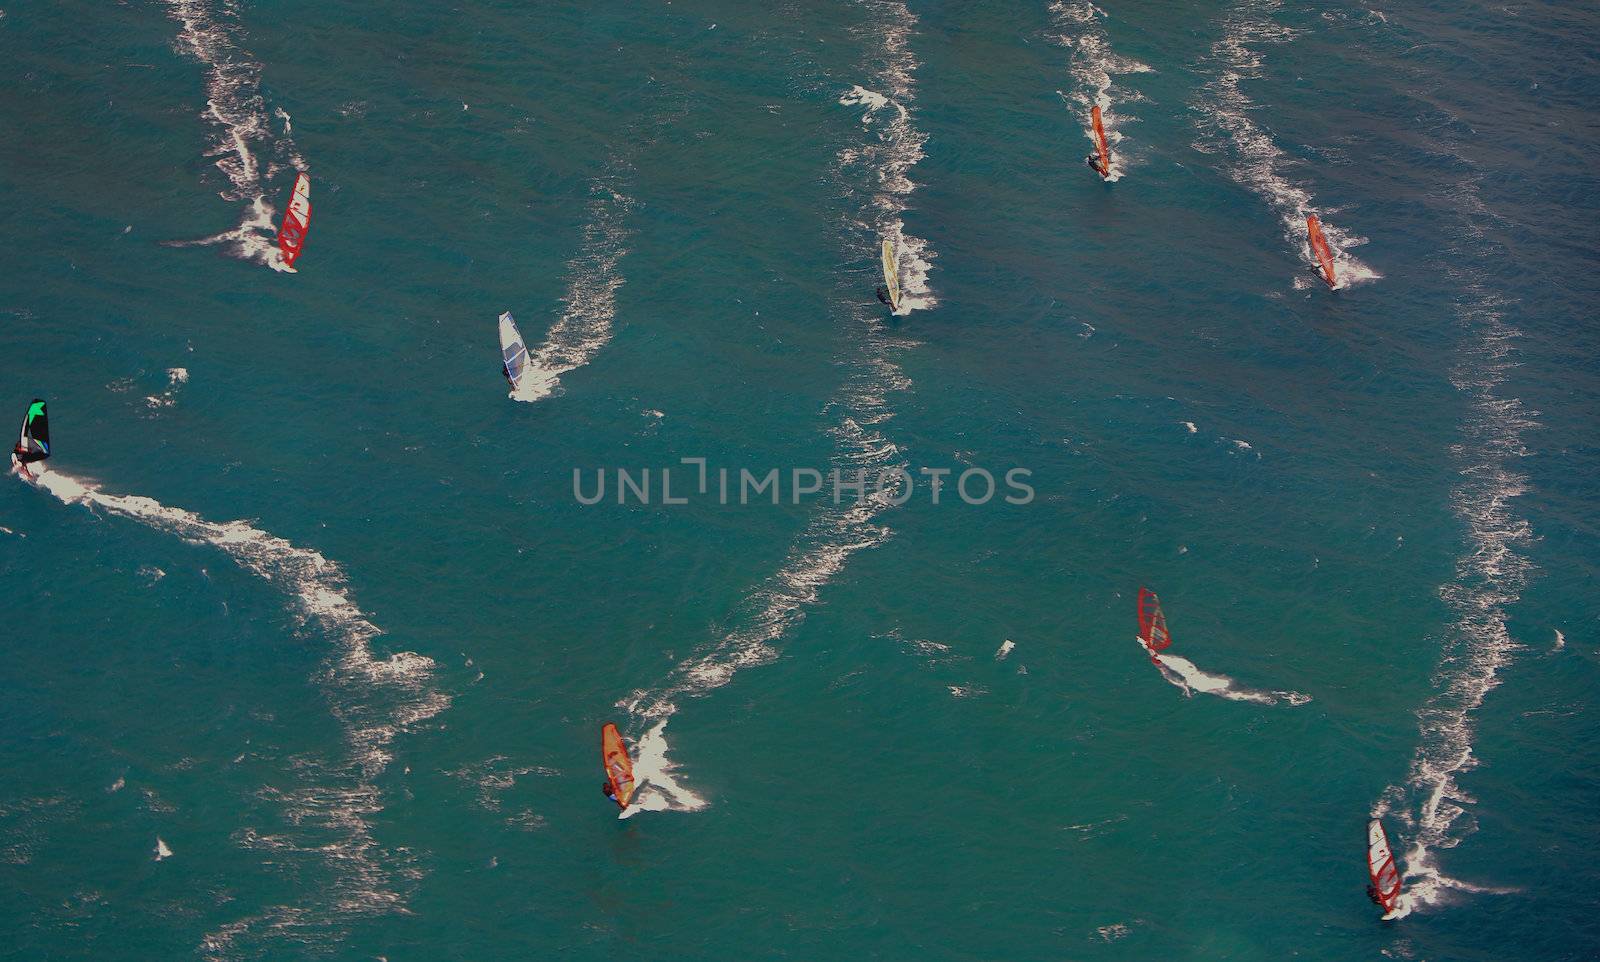 Windsurfers at Hookipa Beach east Maui, Hawaii, USA by hotflash2001